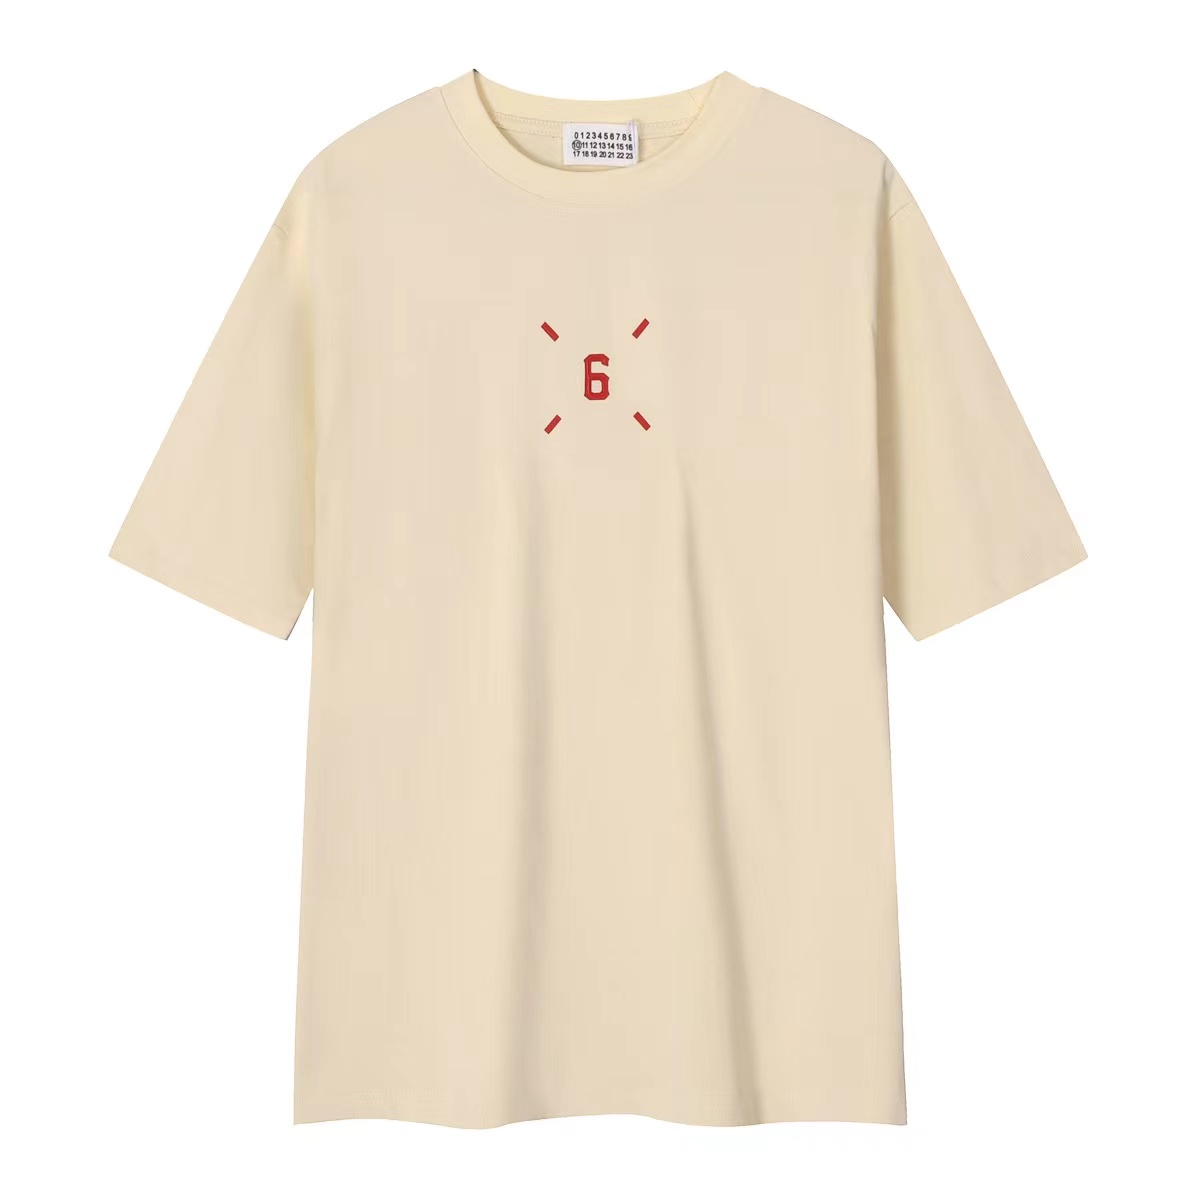 20240404 Maison Margiela 馬吉拉潮流T恤短袖 海外專櫃原單代購 專櫃官網同步在售